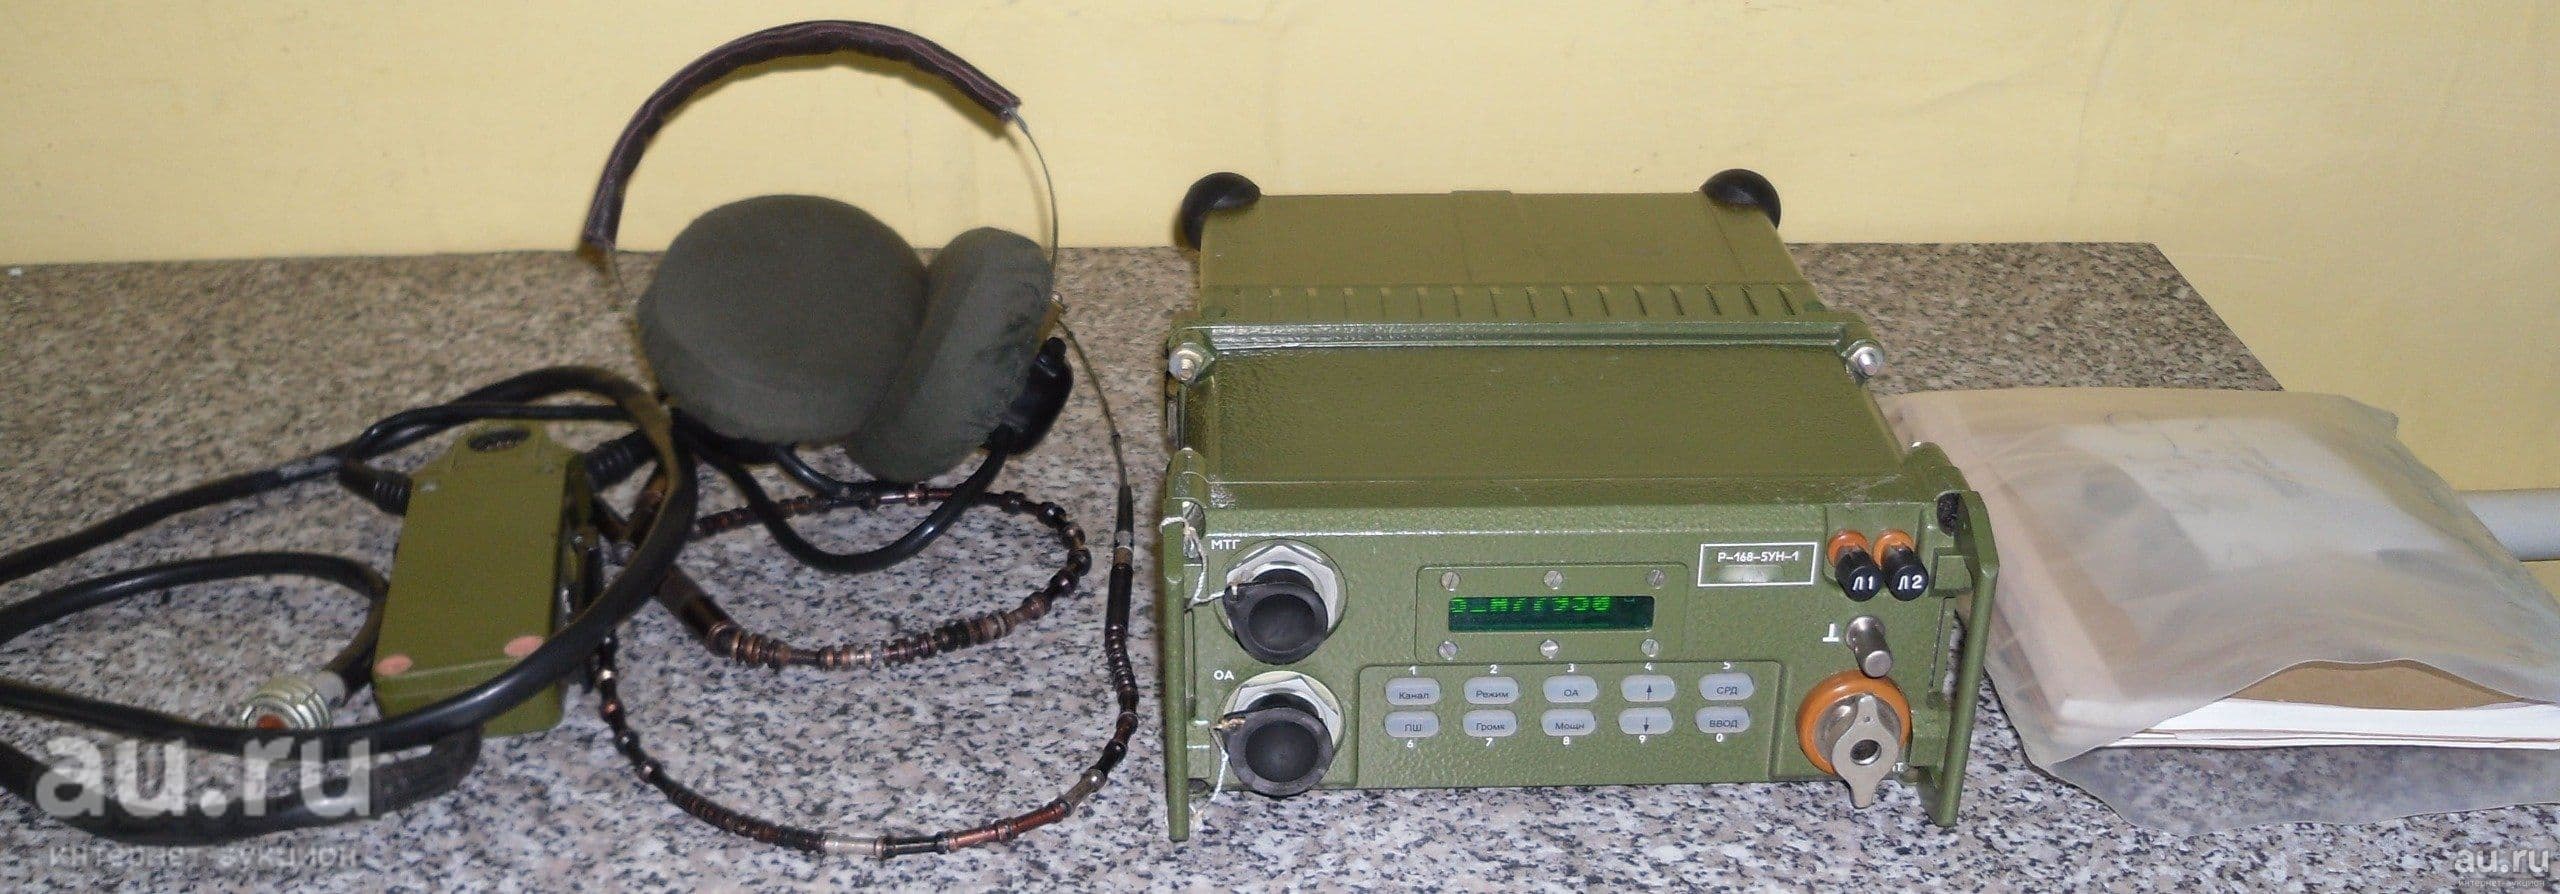 Назначение, тактико-технические характеристики, общее устройство радиостанции Р-168 «Акведук»